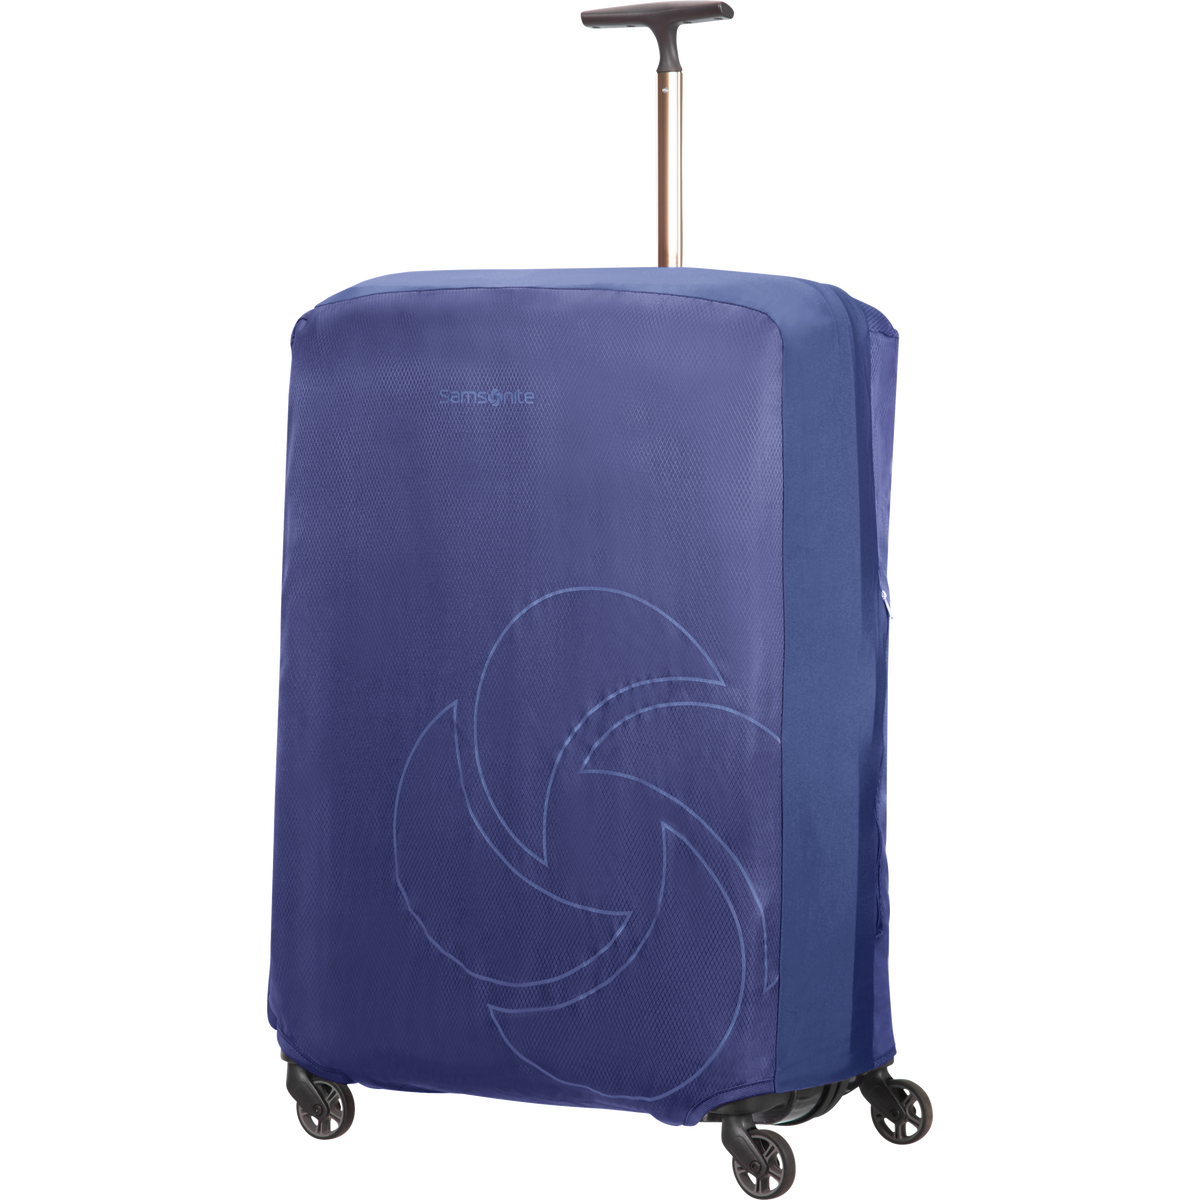 Samsonite Travel Accessories Kofferhoes XL - Spinner 81cm + 86cm Midnight Blue